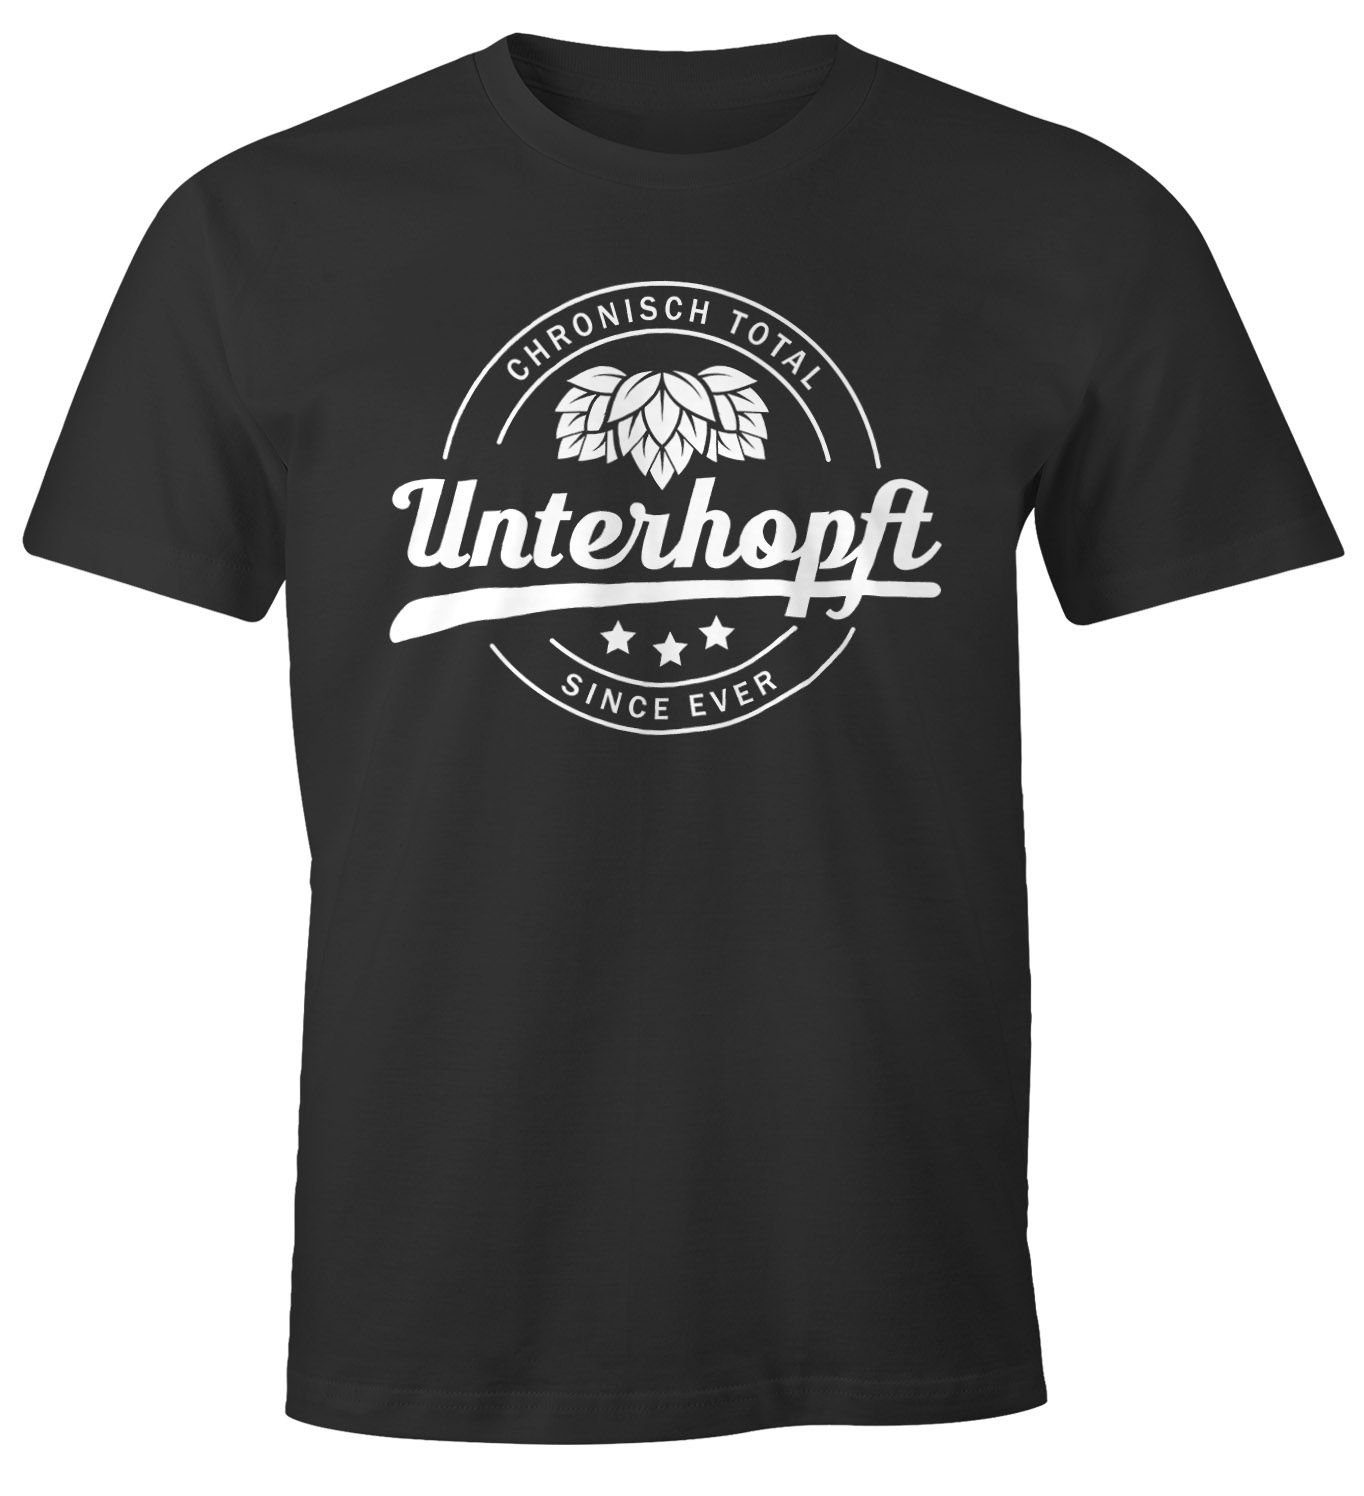 MoonWorks Chronisch Unterhopft Total Herren T-Shirt Since Ever Fun-Shirt